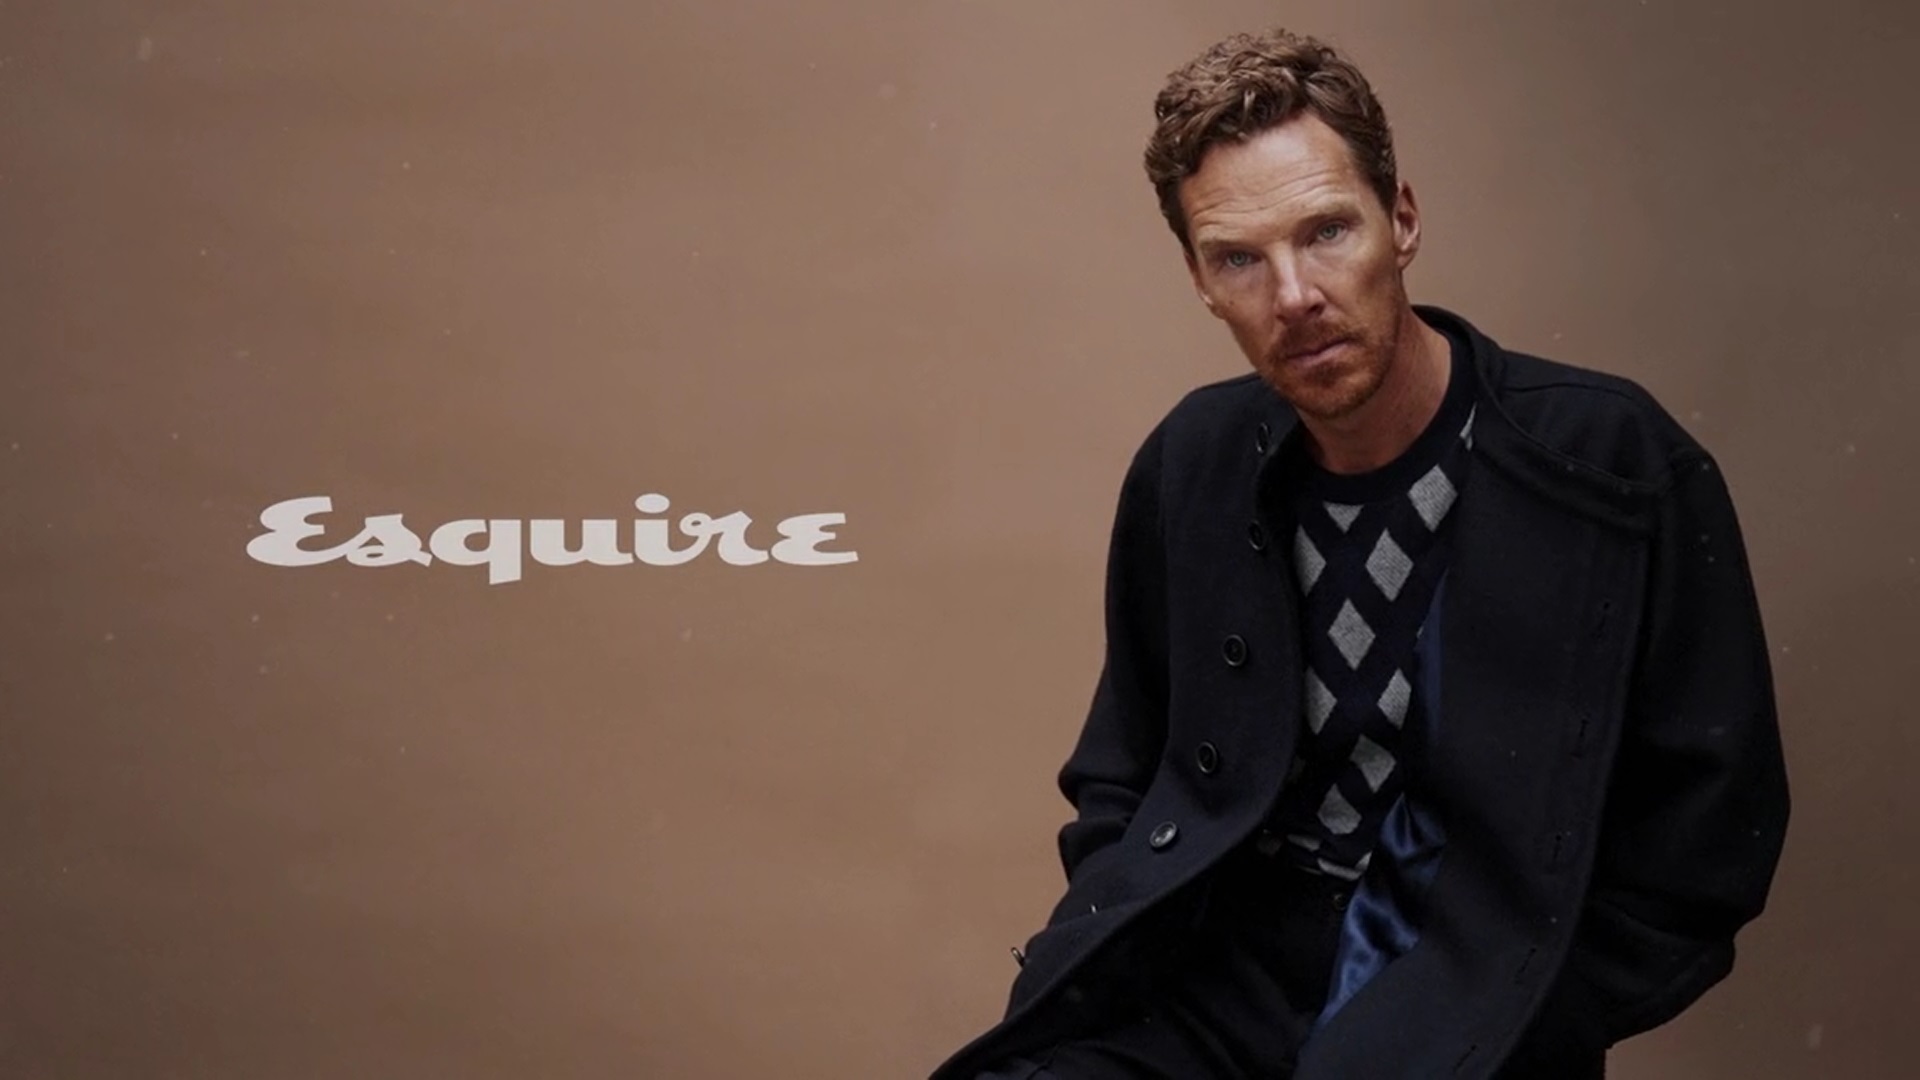 Fashion Esquire featuring Benedict Cumberbatch